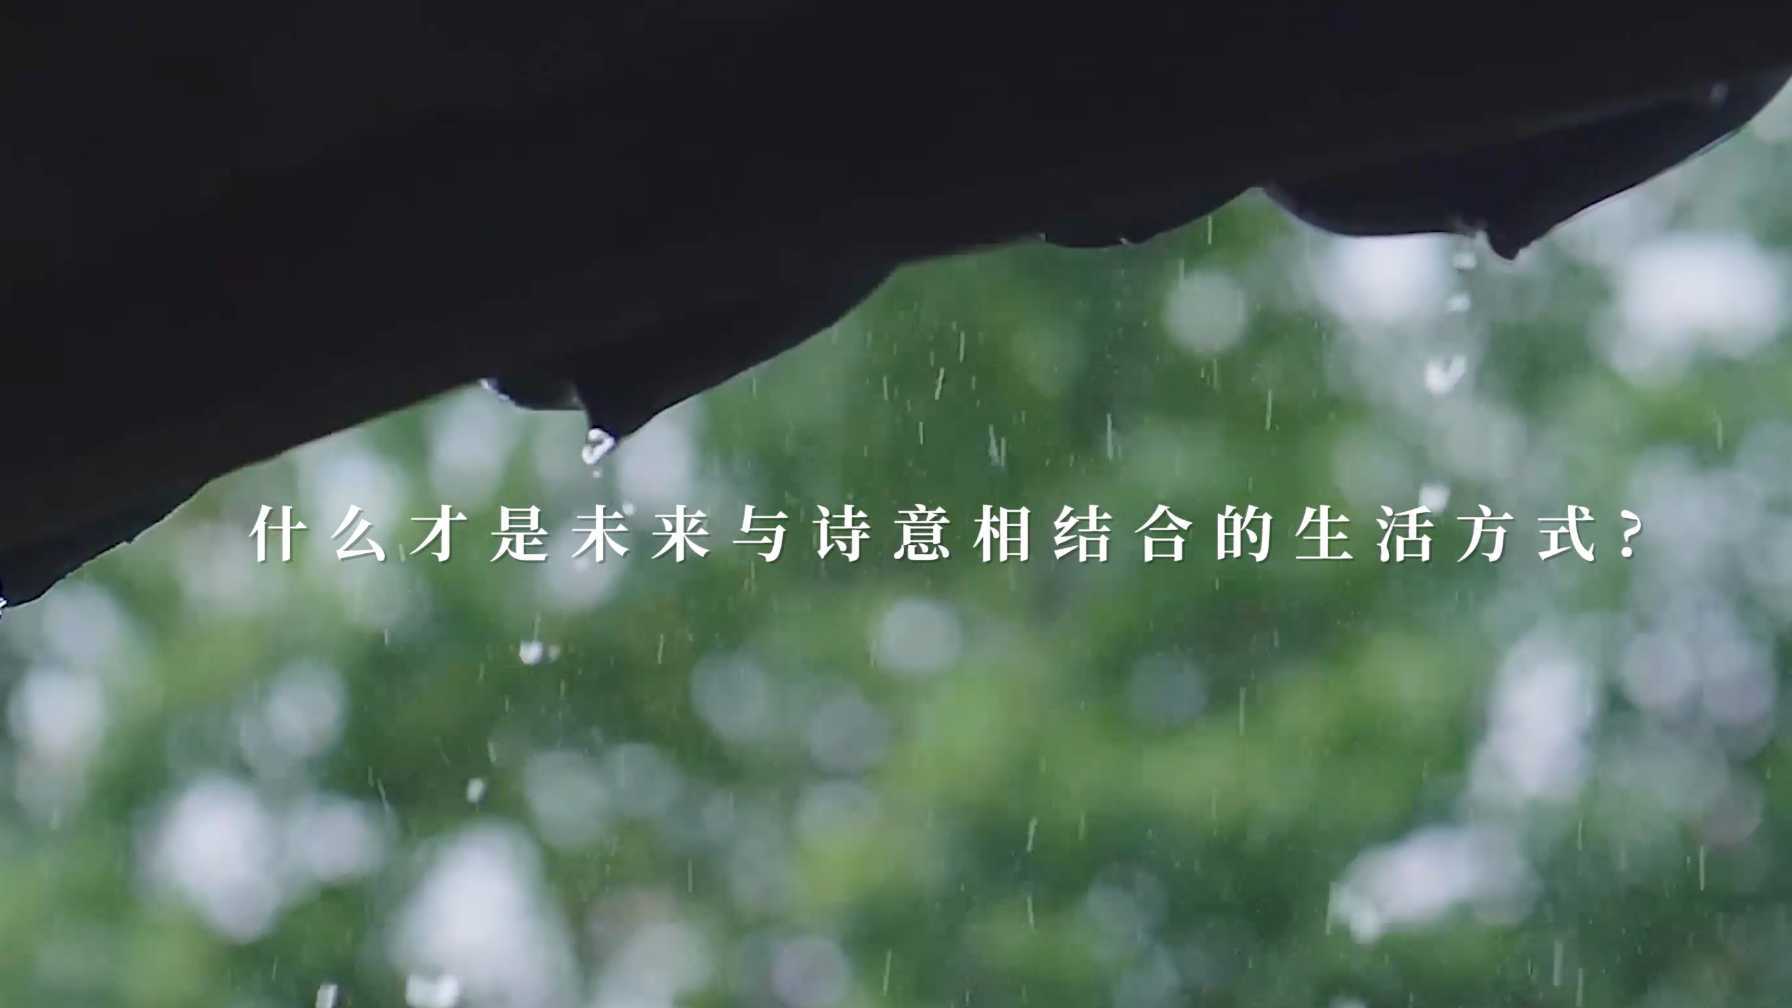 上海临港滴水湖的新生活方式短片《什么才是未来与诗意的生活方式》